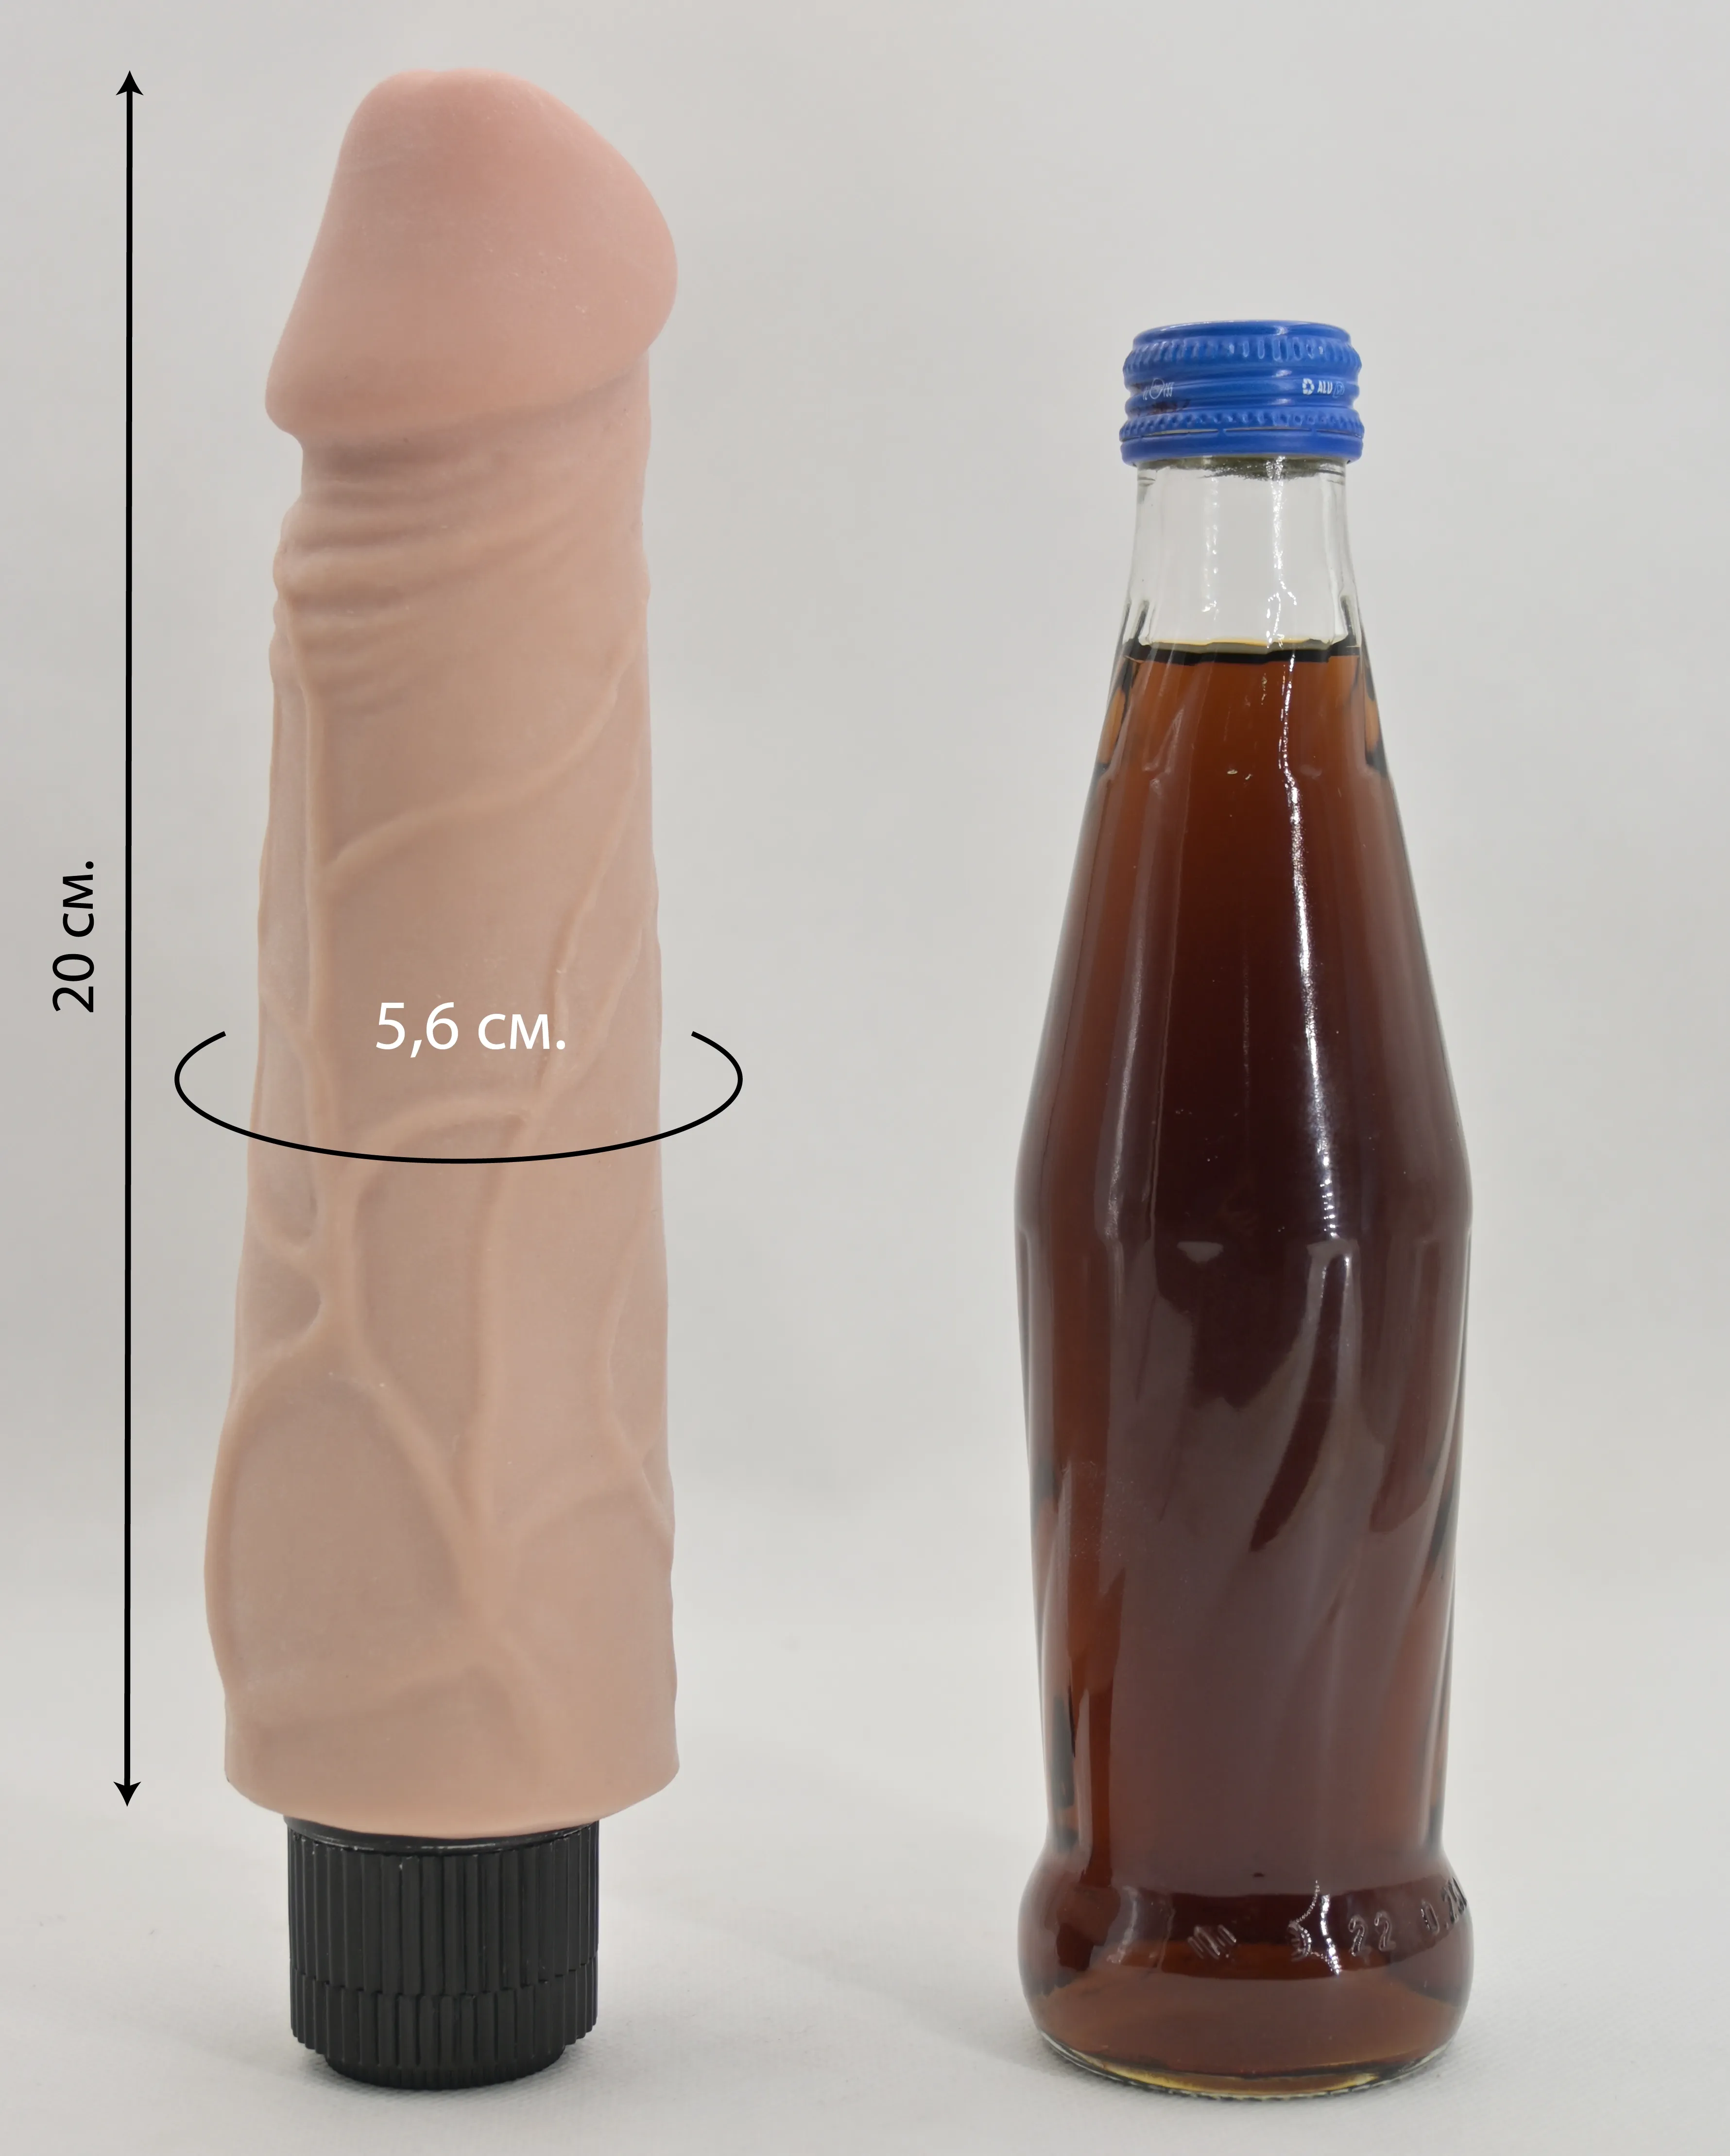 Размеры и сравнение Greedy Guy с бутылкой газировки 0,33 л.